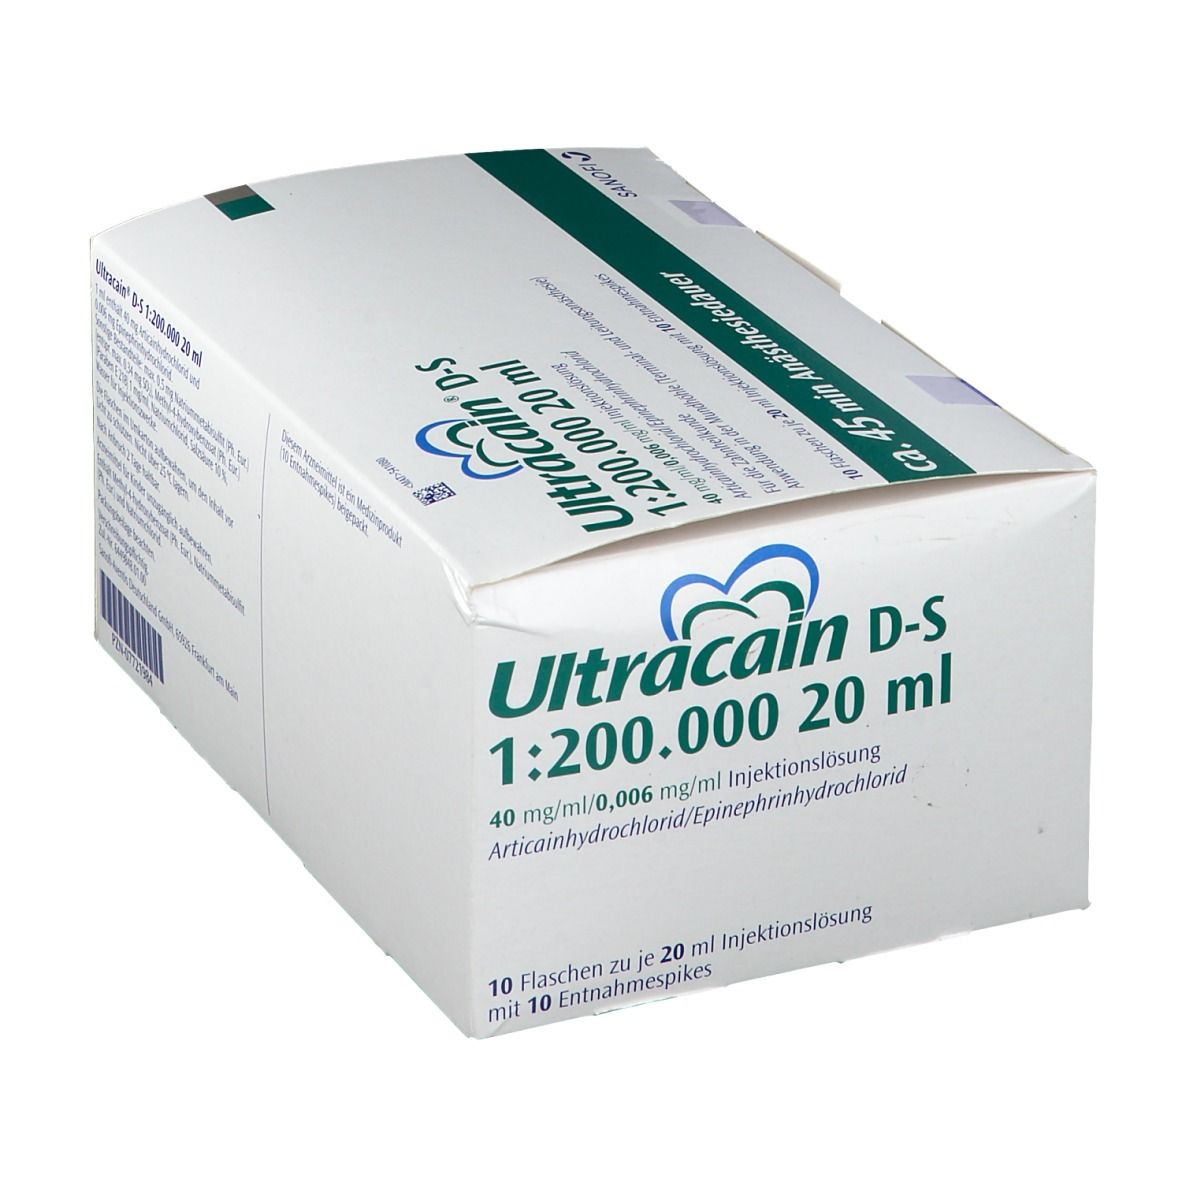 Ultracain® D-S 1:200000 20ml